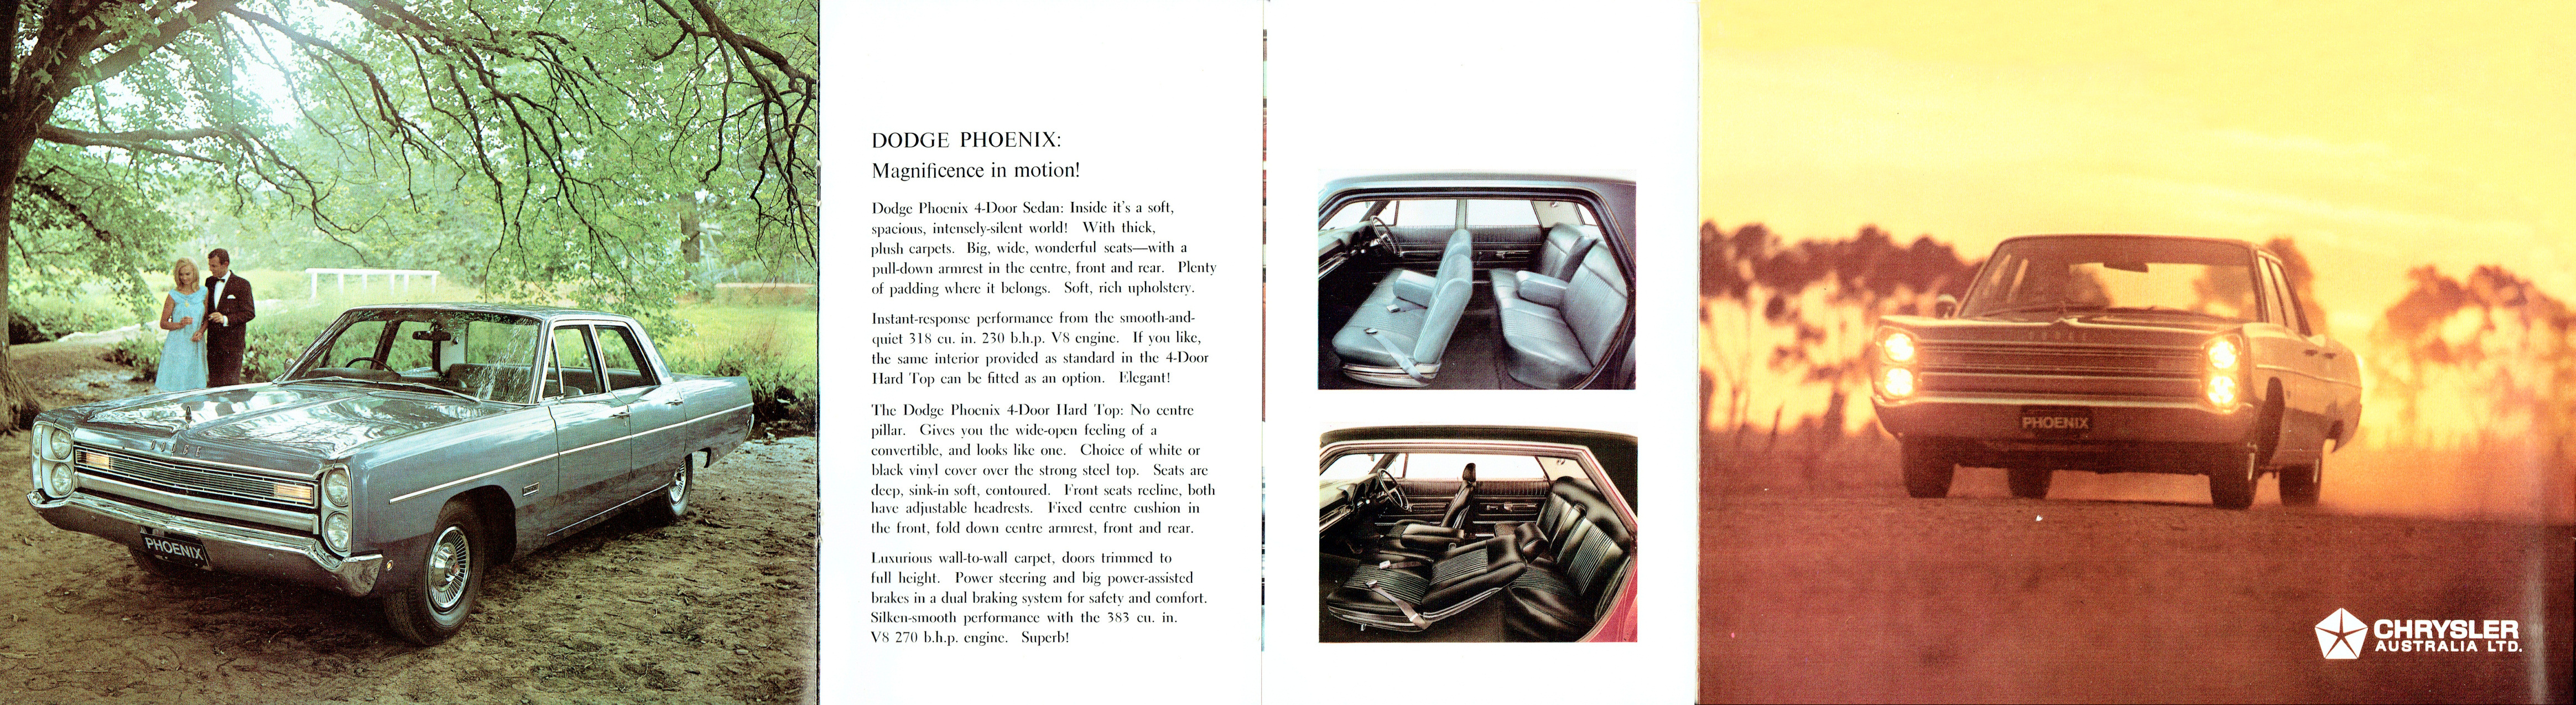 1968 Dodge Phoenix-06-07-10